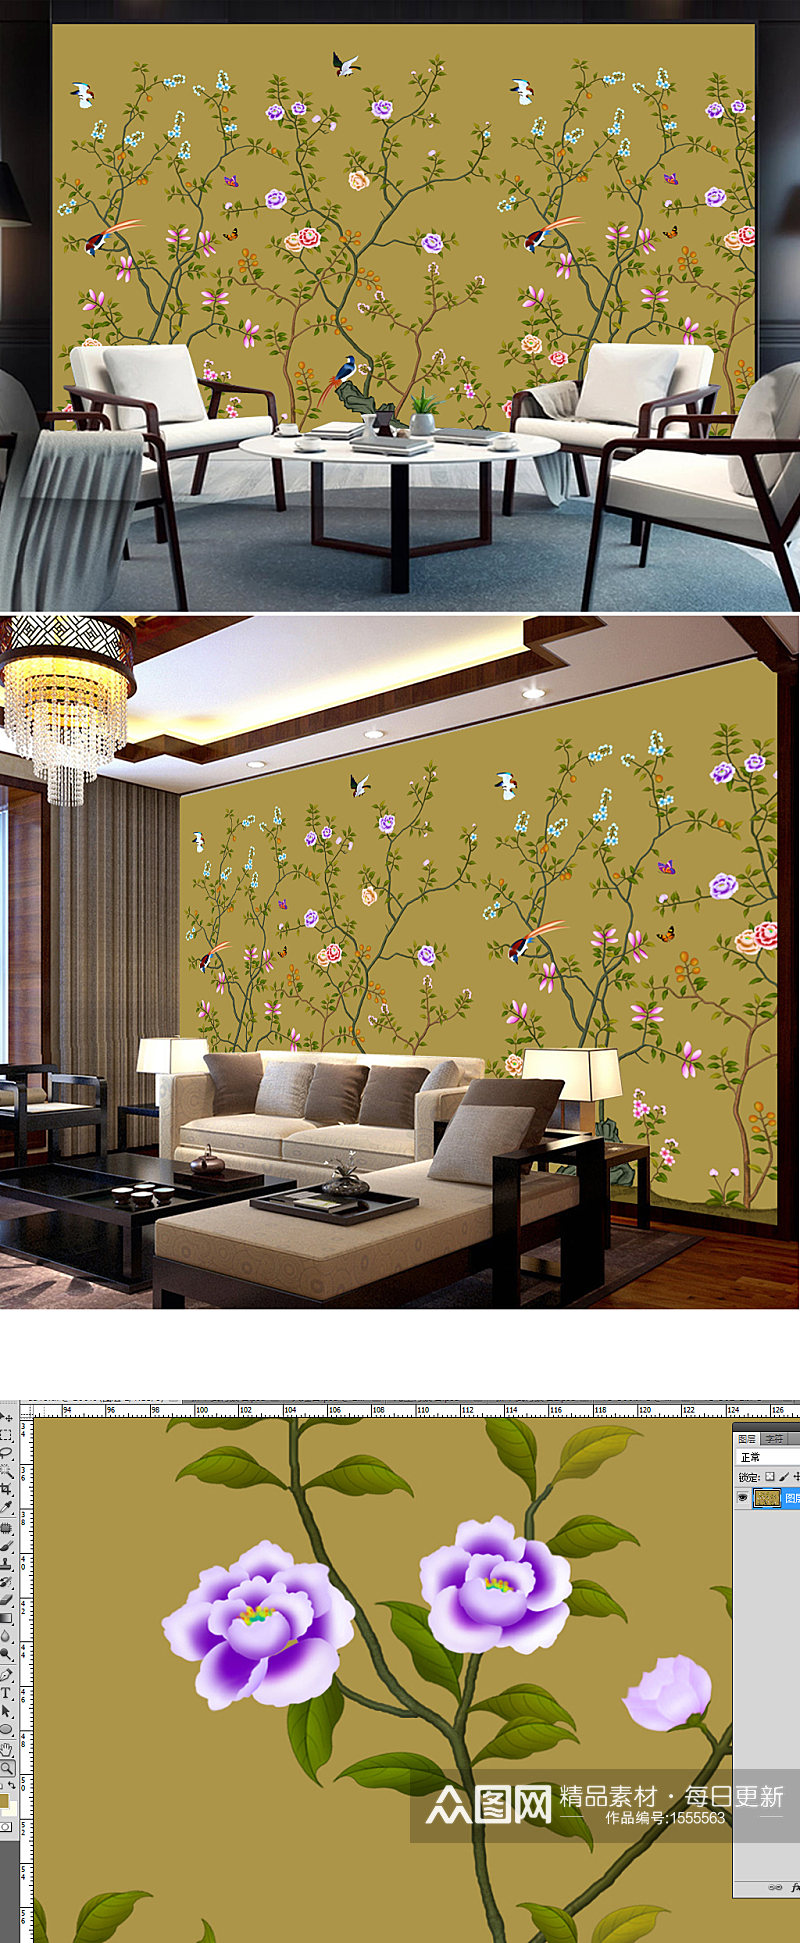 海棠花新中式手绘工笔花鸟背景墙装饰画素材